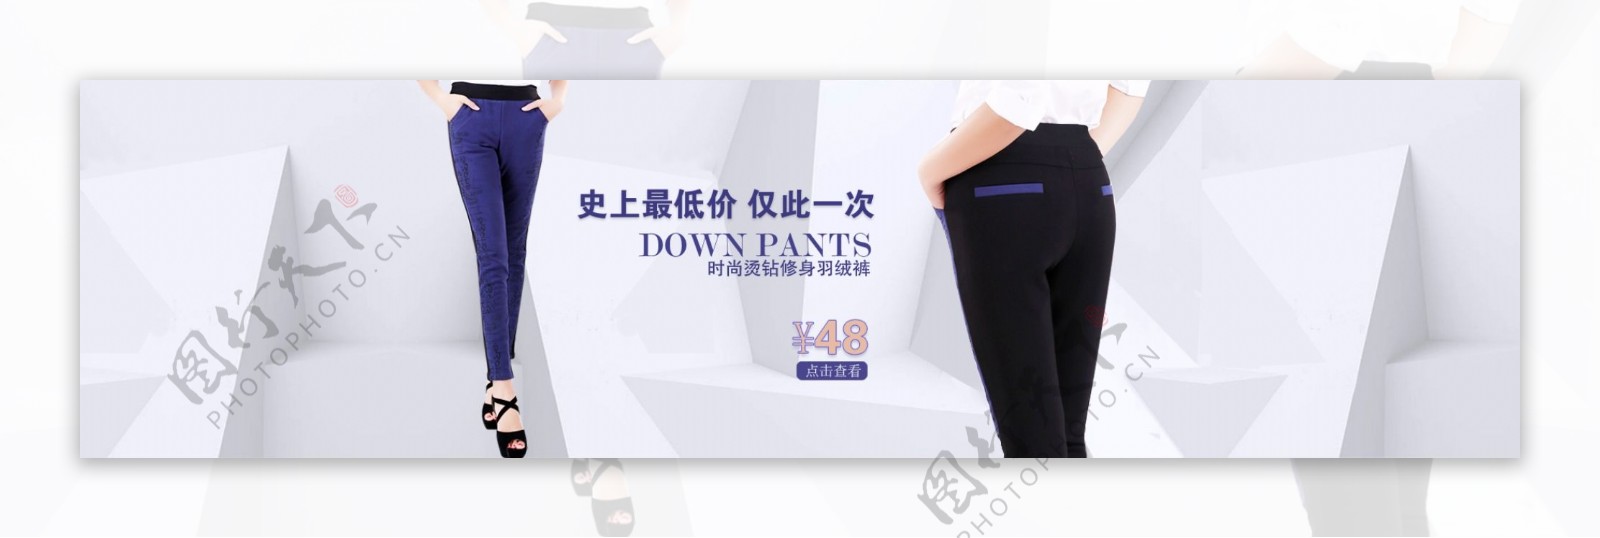 女裤海报图片